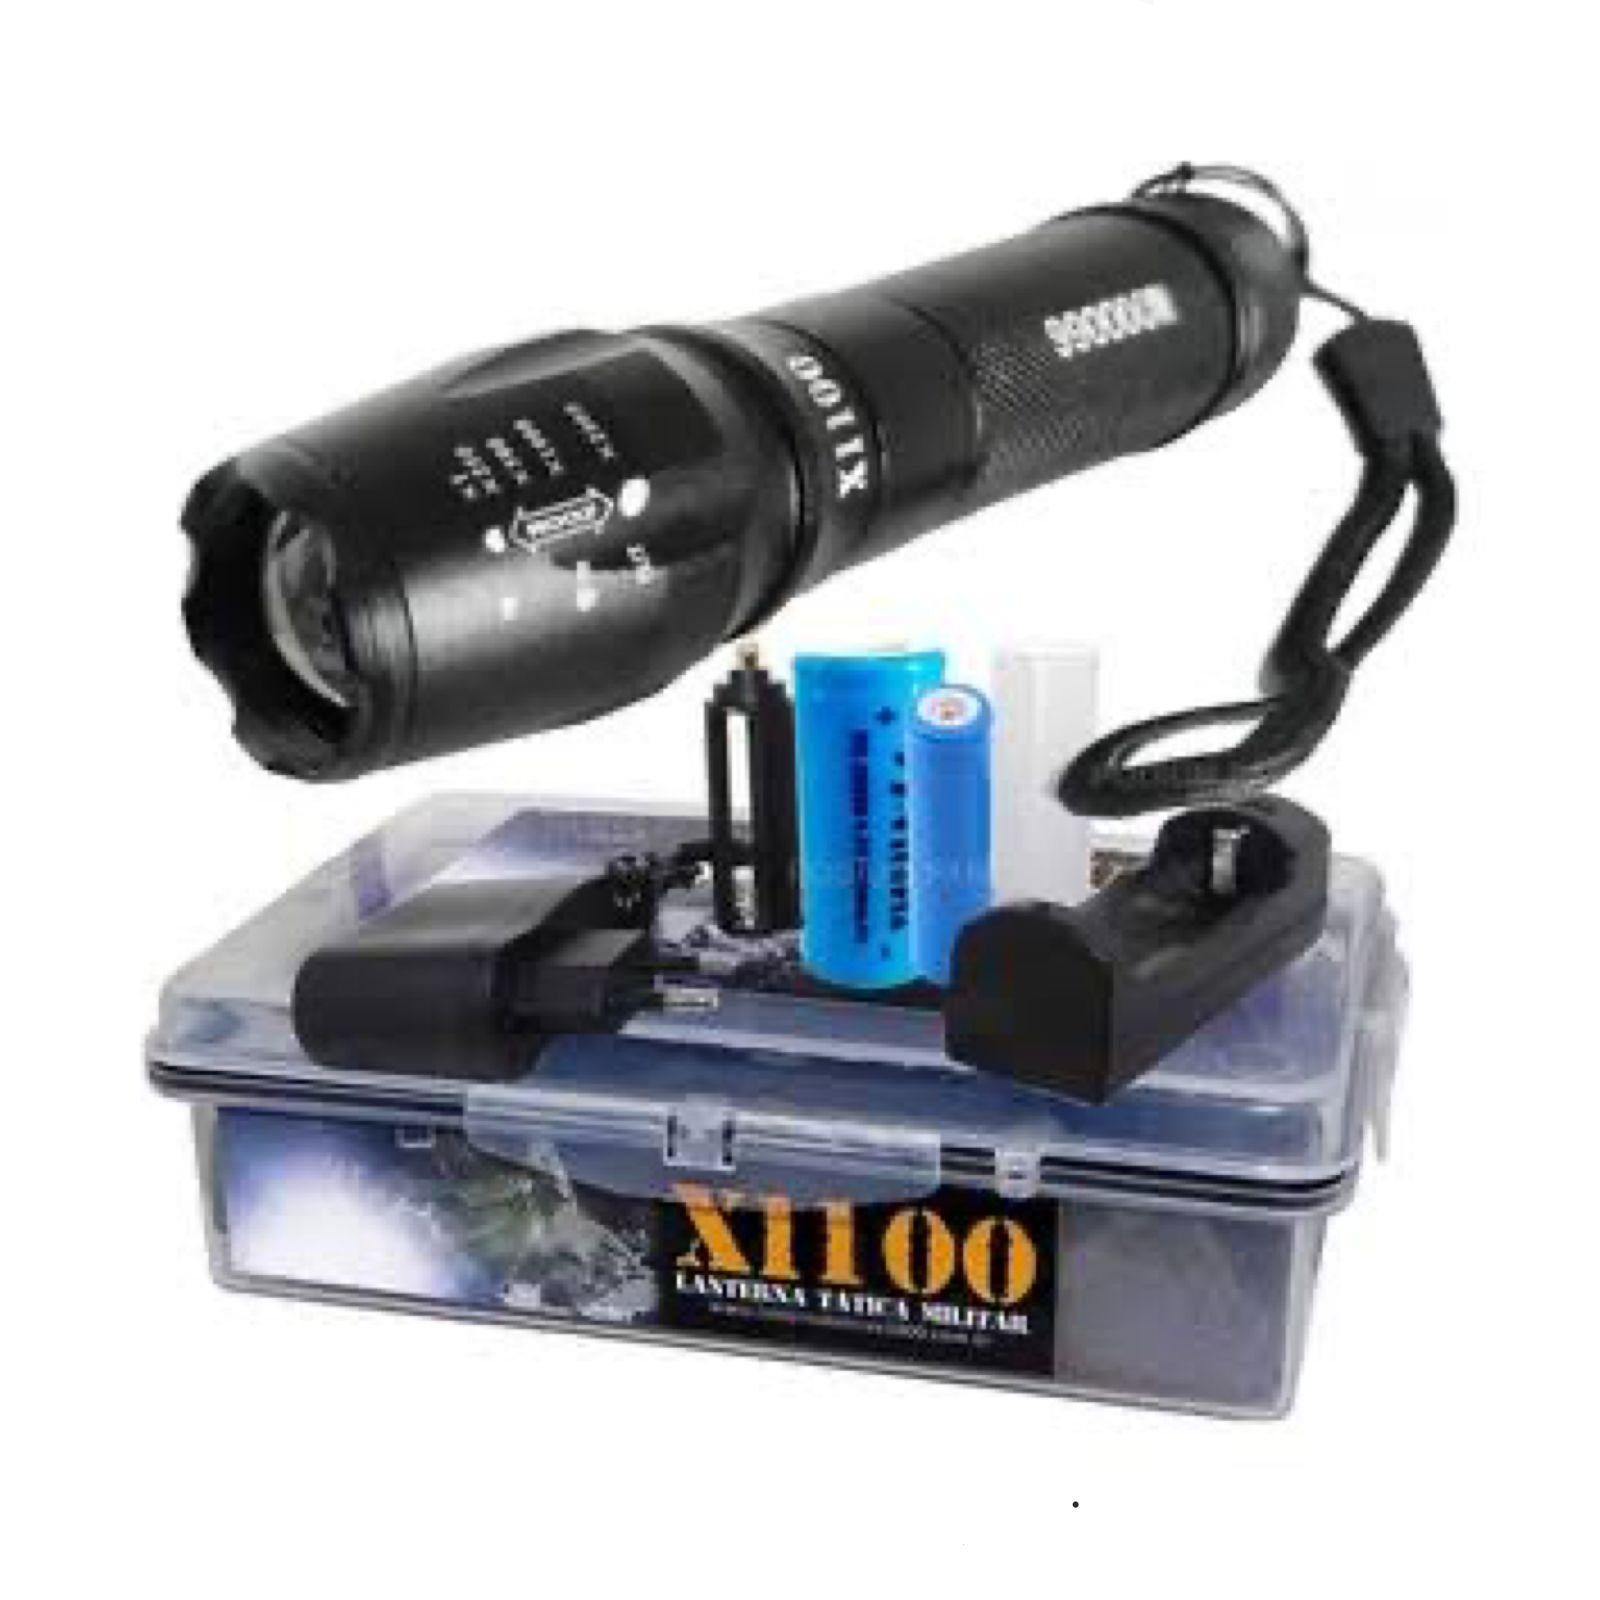 Lanterna Tática Militar Potente Recarregável X1100 - XML-T6 com Bateria de 100 horas - 1